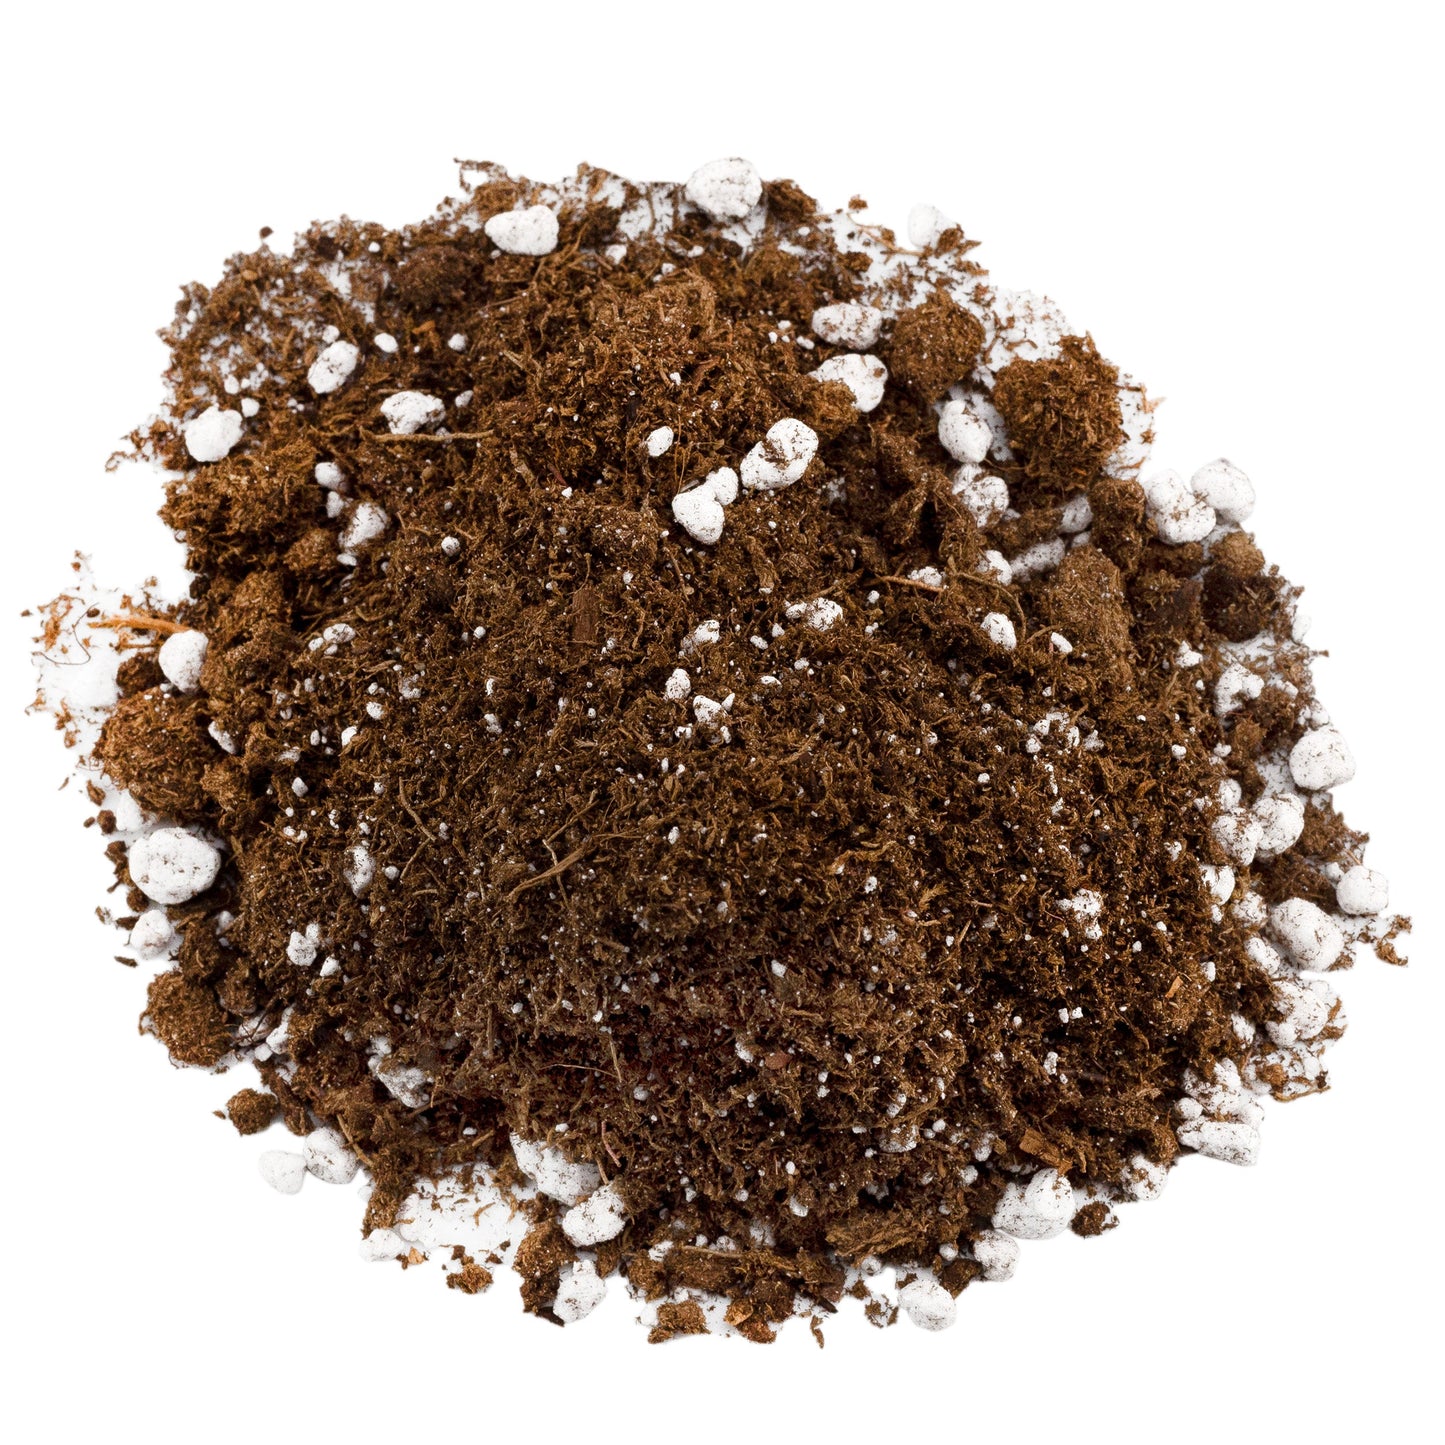 Carnivorous Plant Potting Soil Mix (8 Quarts) - SSKIT147